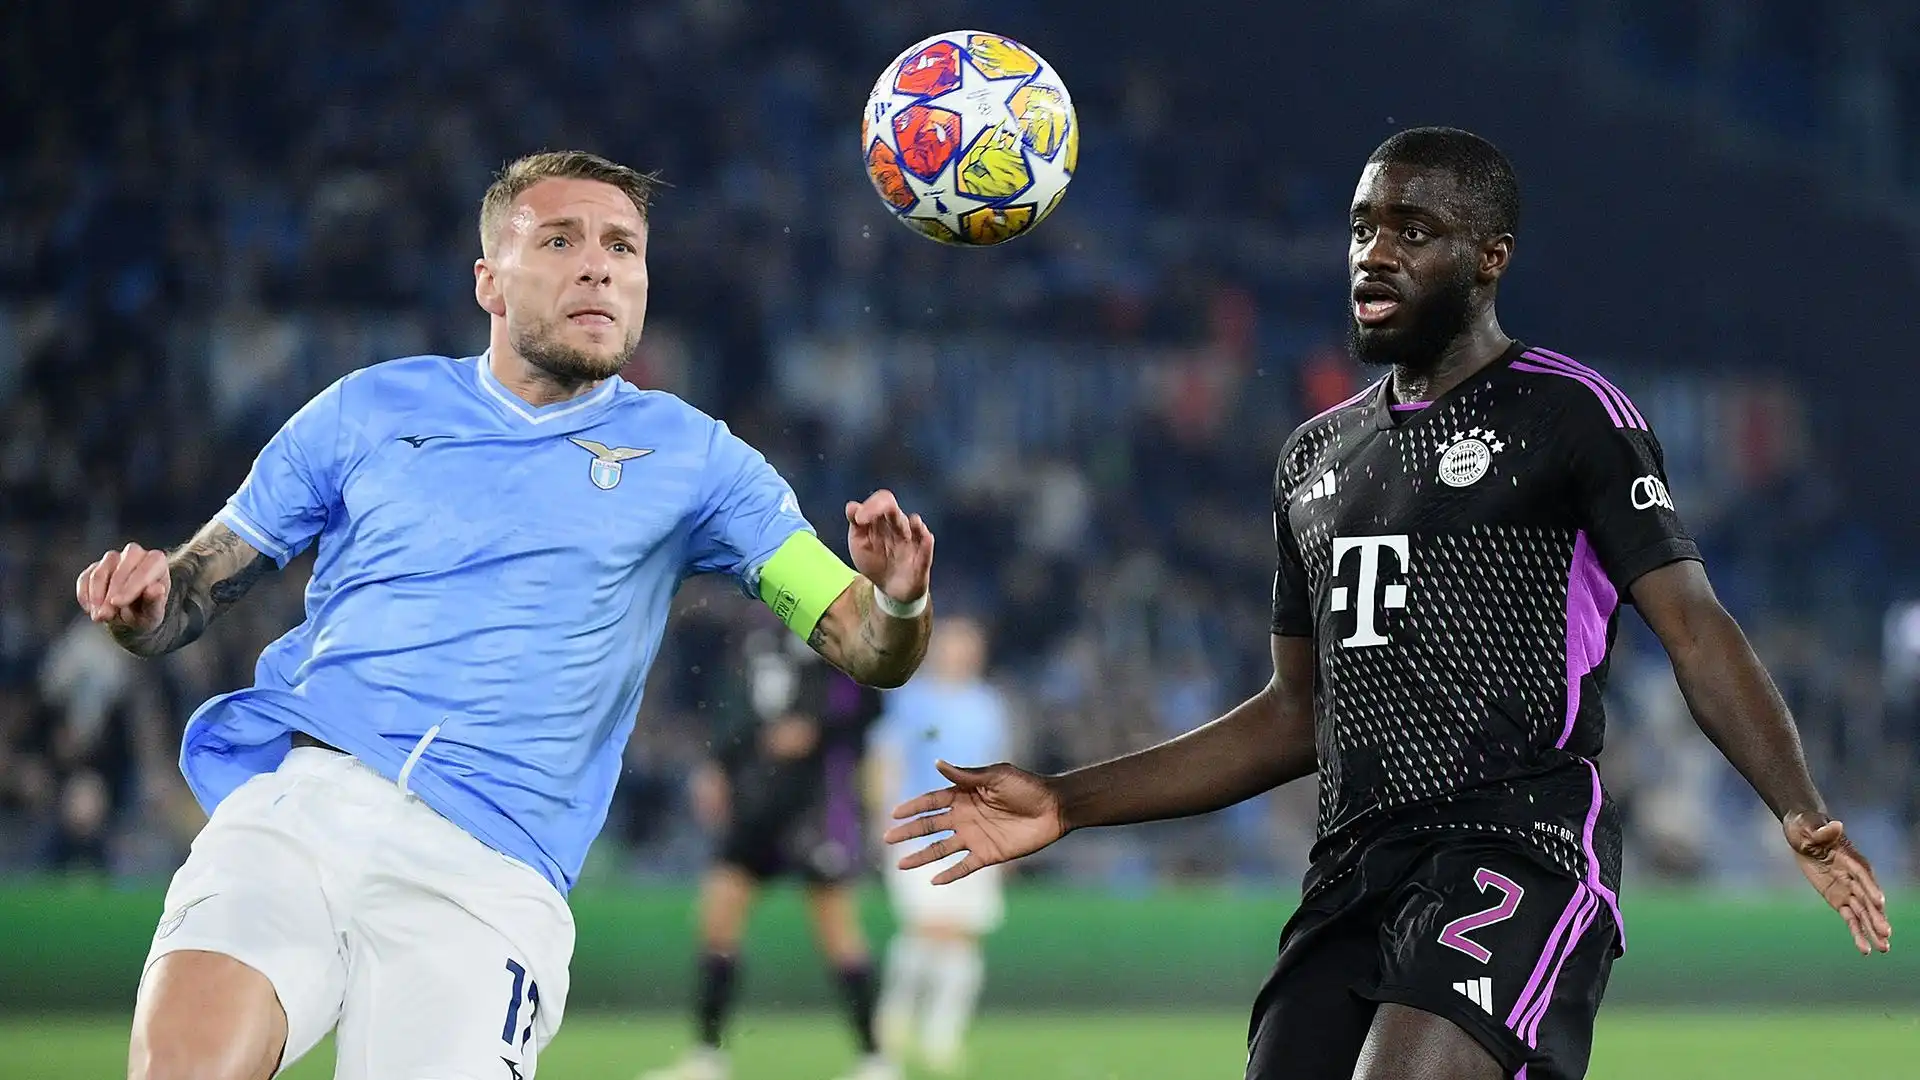 L'errore commesso contro la Lazio ha scatenato l'ira dei tifosi tedeschi